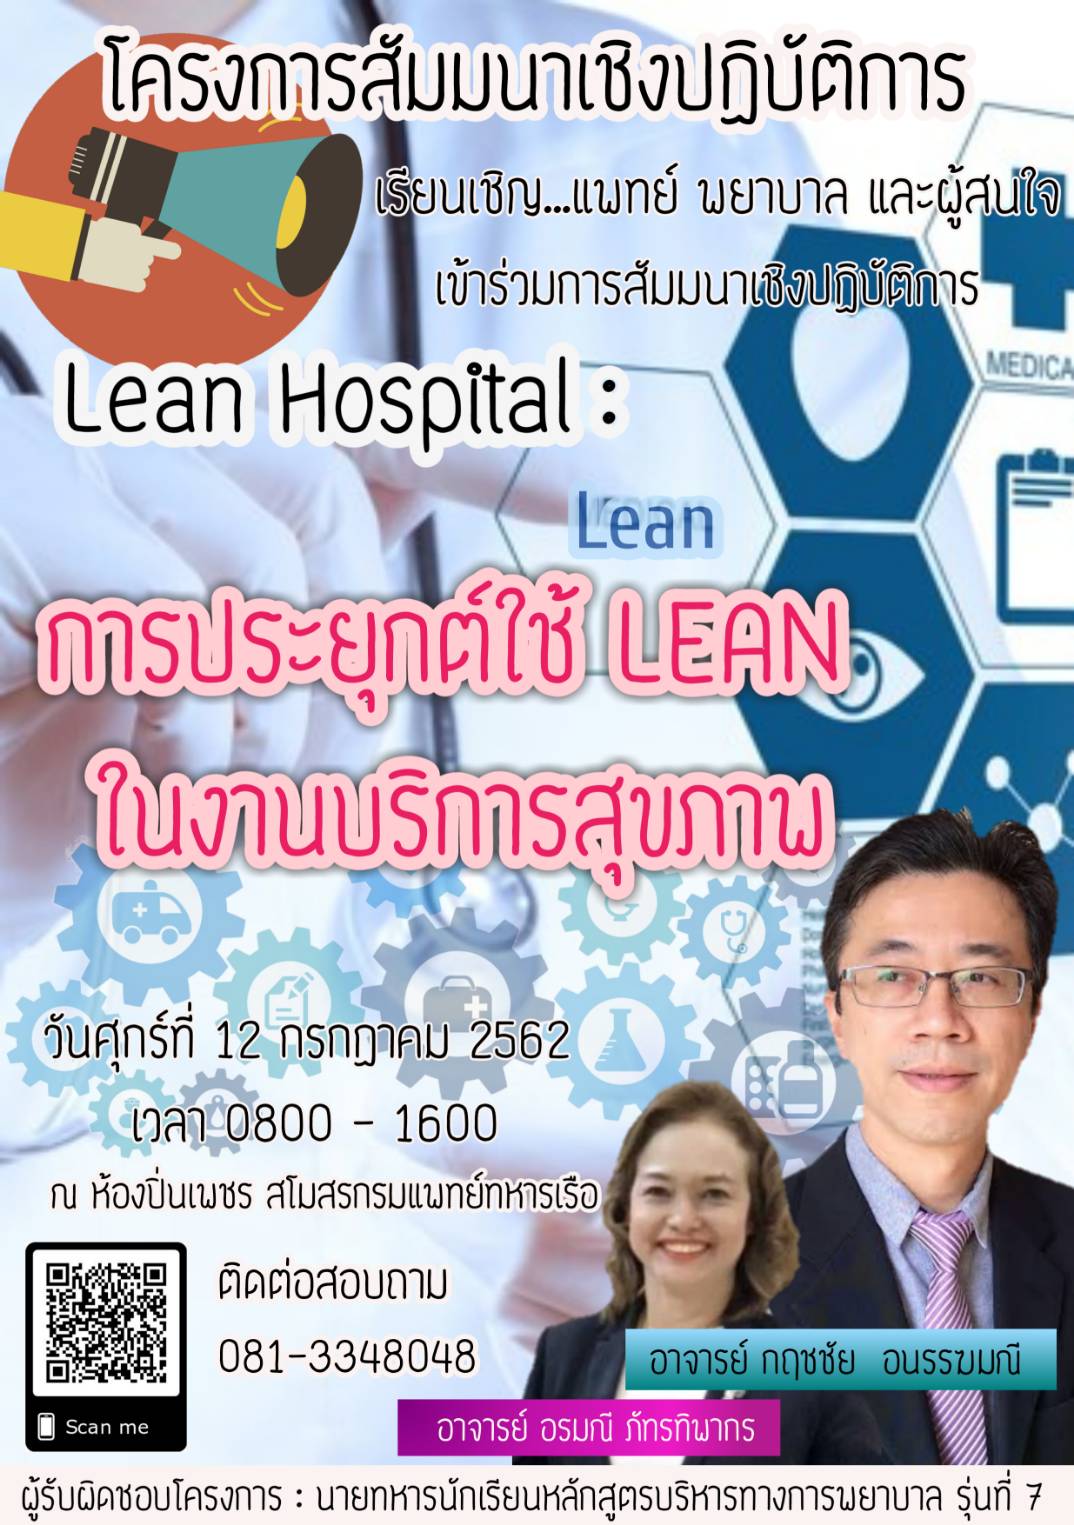 ขอเชิญ แพทย์ พยาบาล และผู้สนใจ เข้าร่วมโครงการสัมมนาเชิงปฏิบัติการ "Lean Hospital : การประยุกต์ใช้ LEAN ในงานบริการสุขภาพ